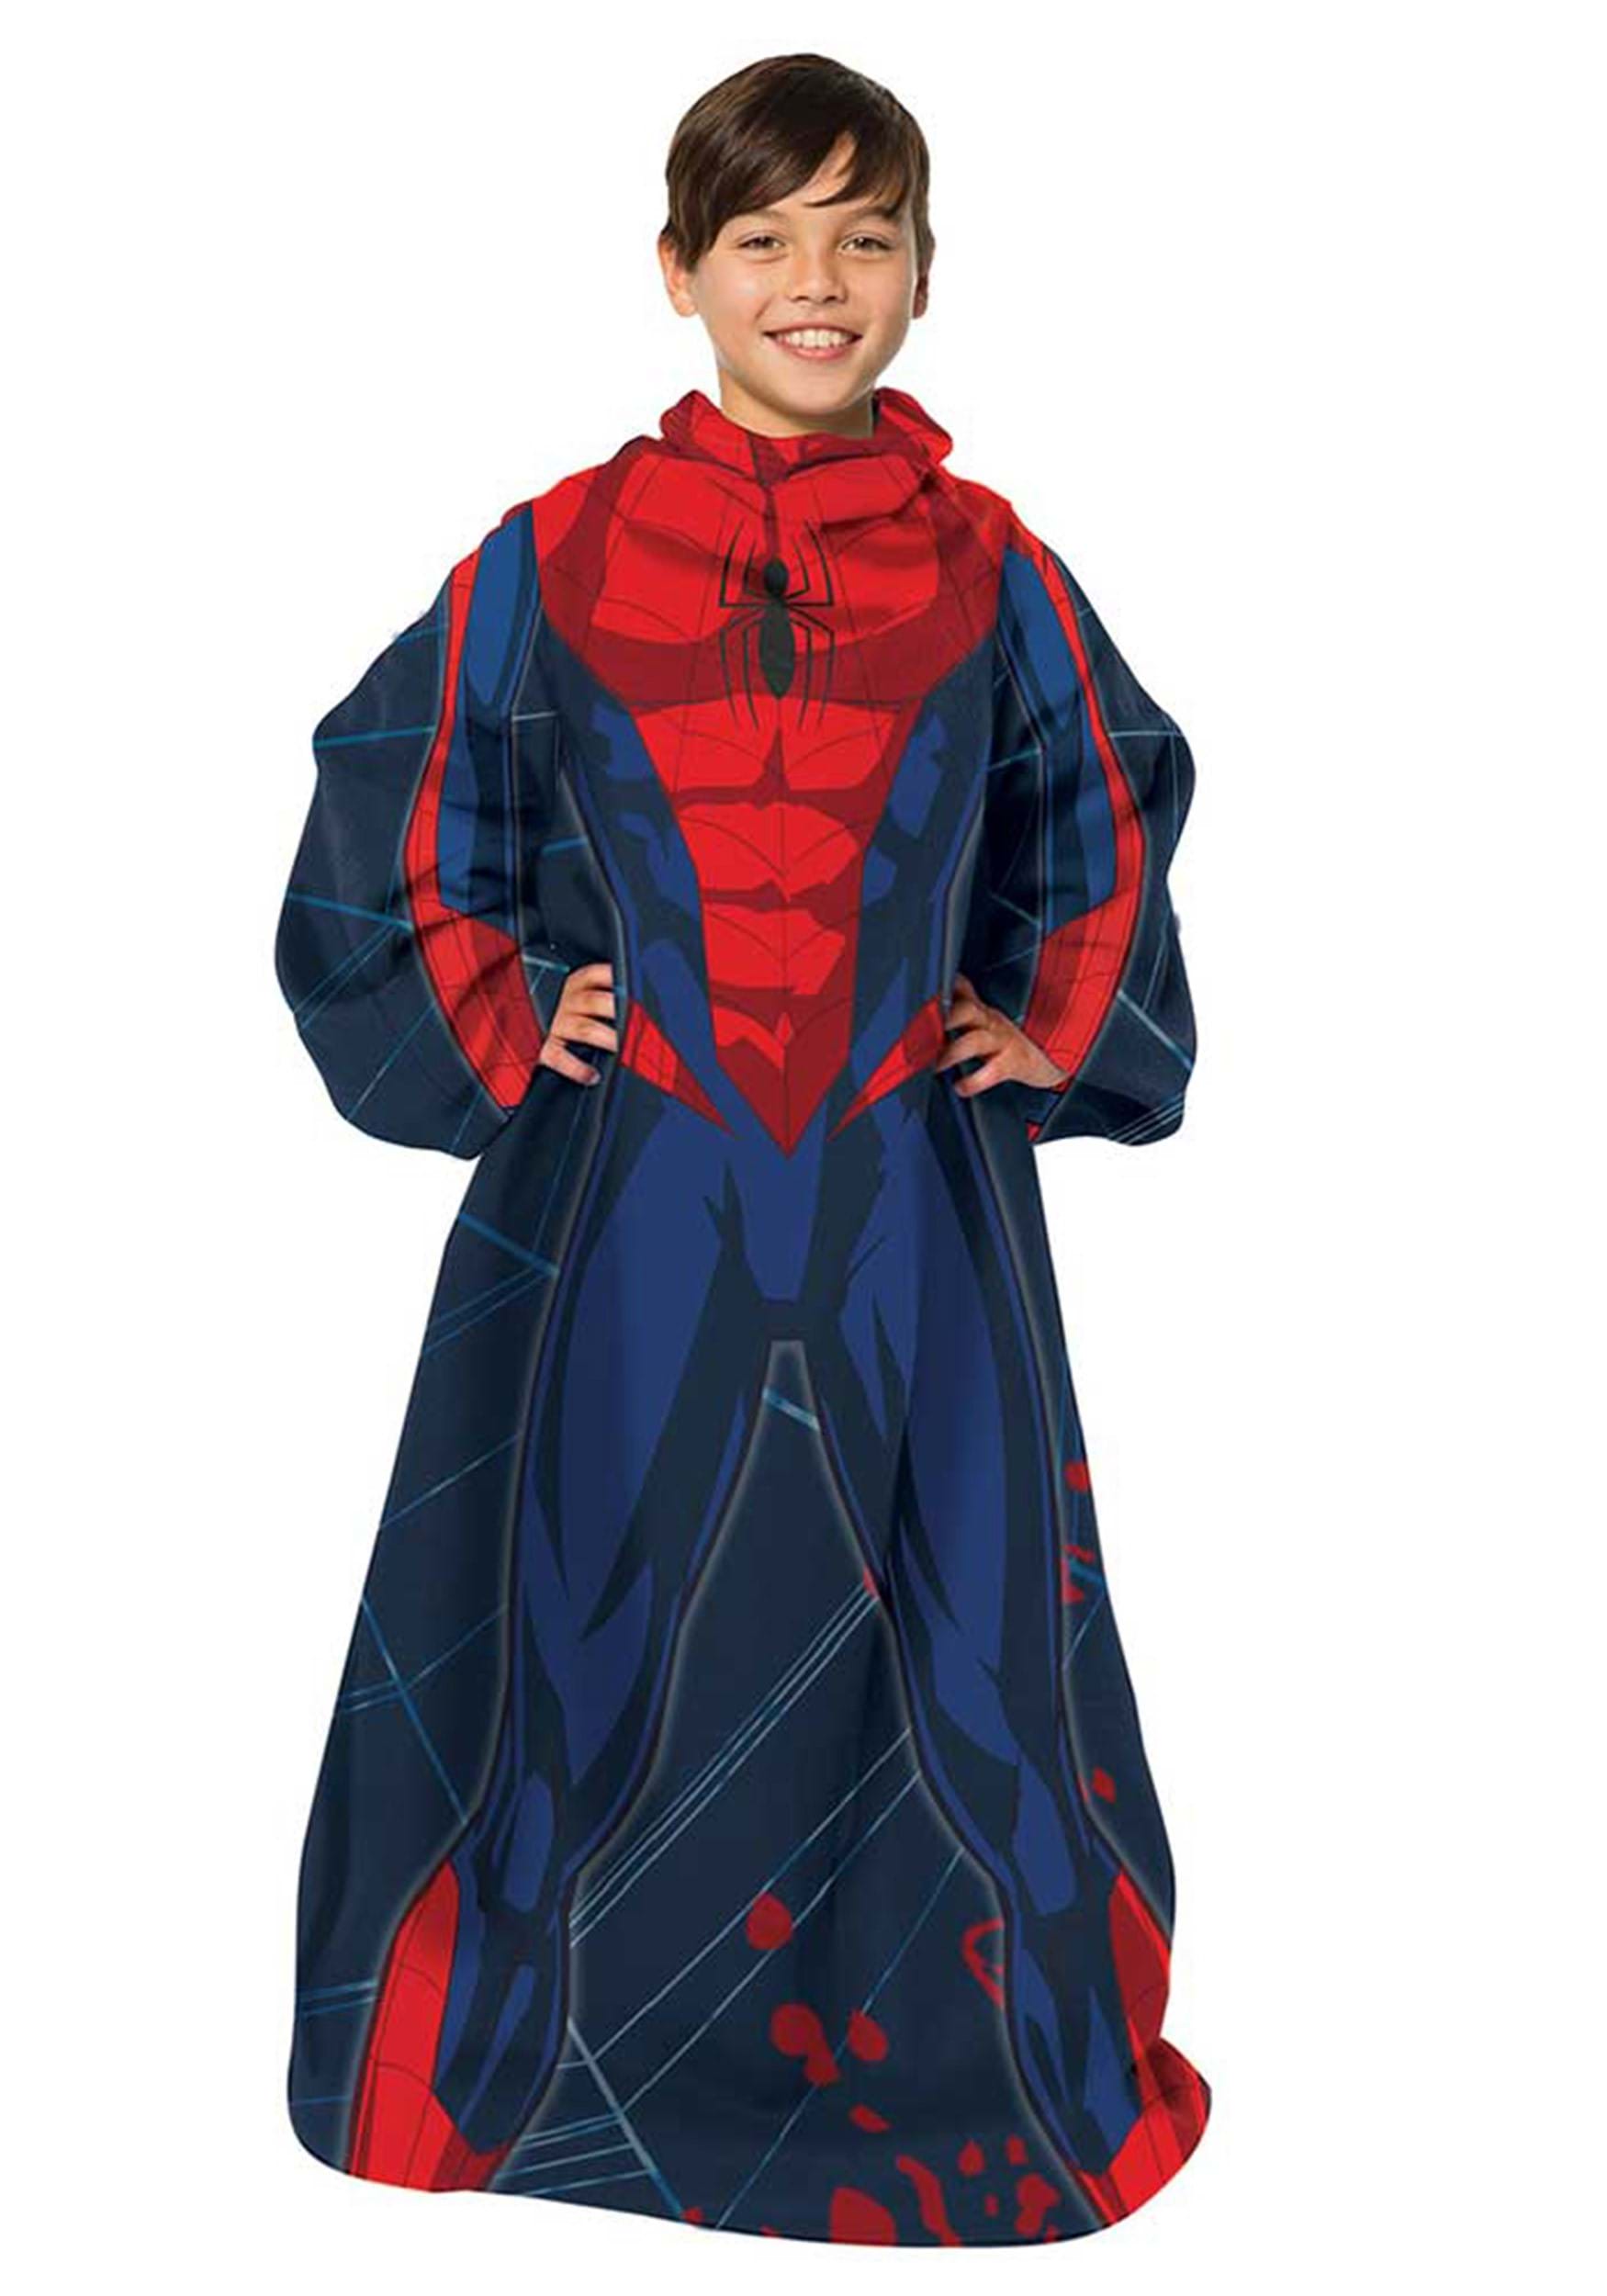 El increíble lanzamiento de Spider-Man Juvy Comfy Multicolor